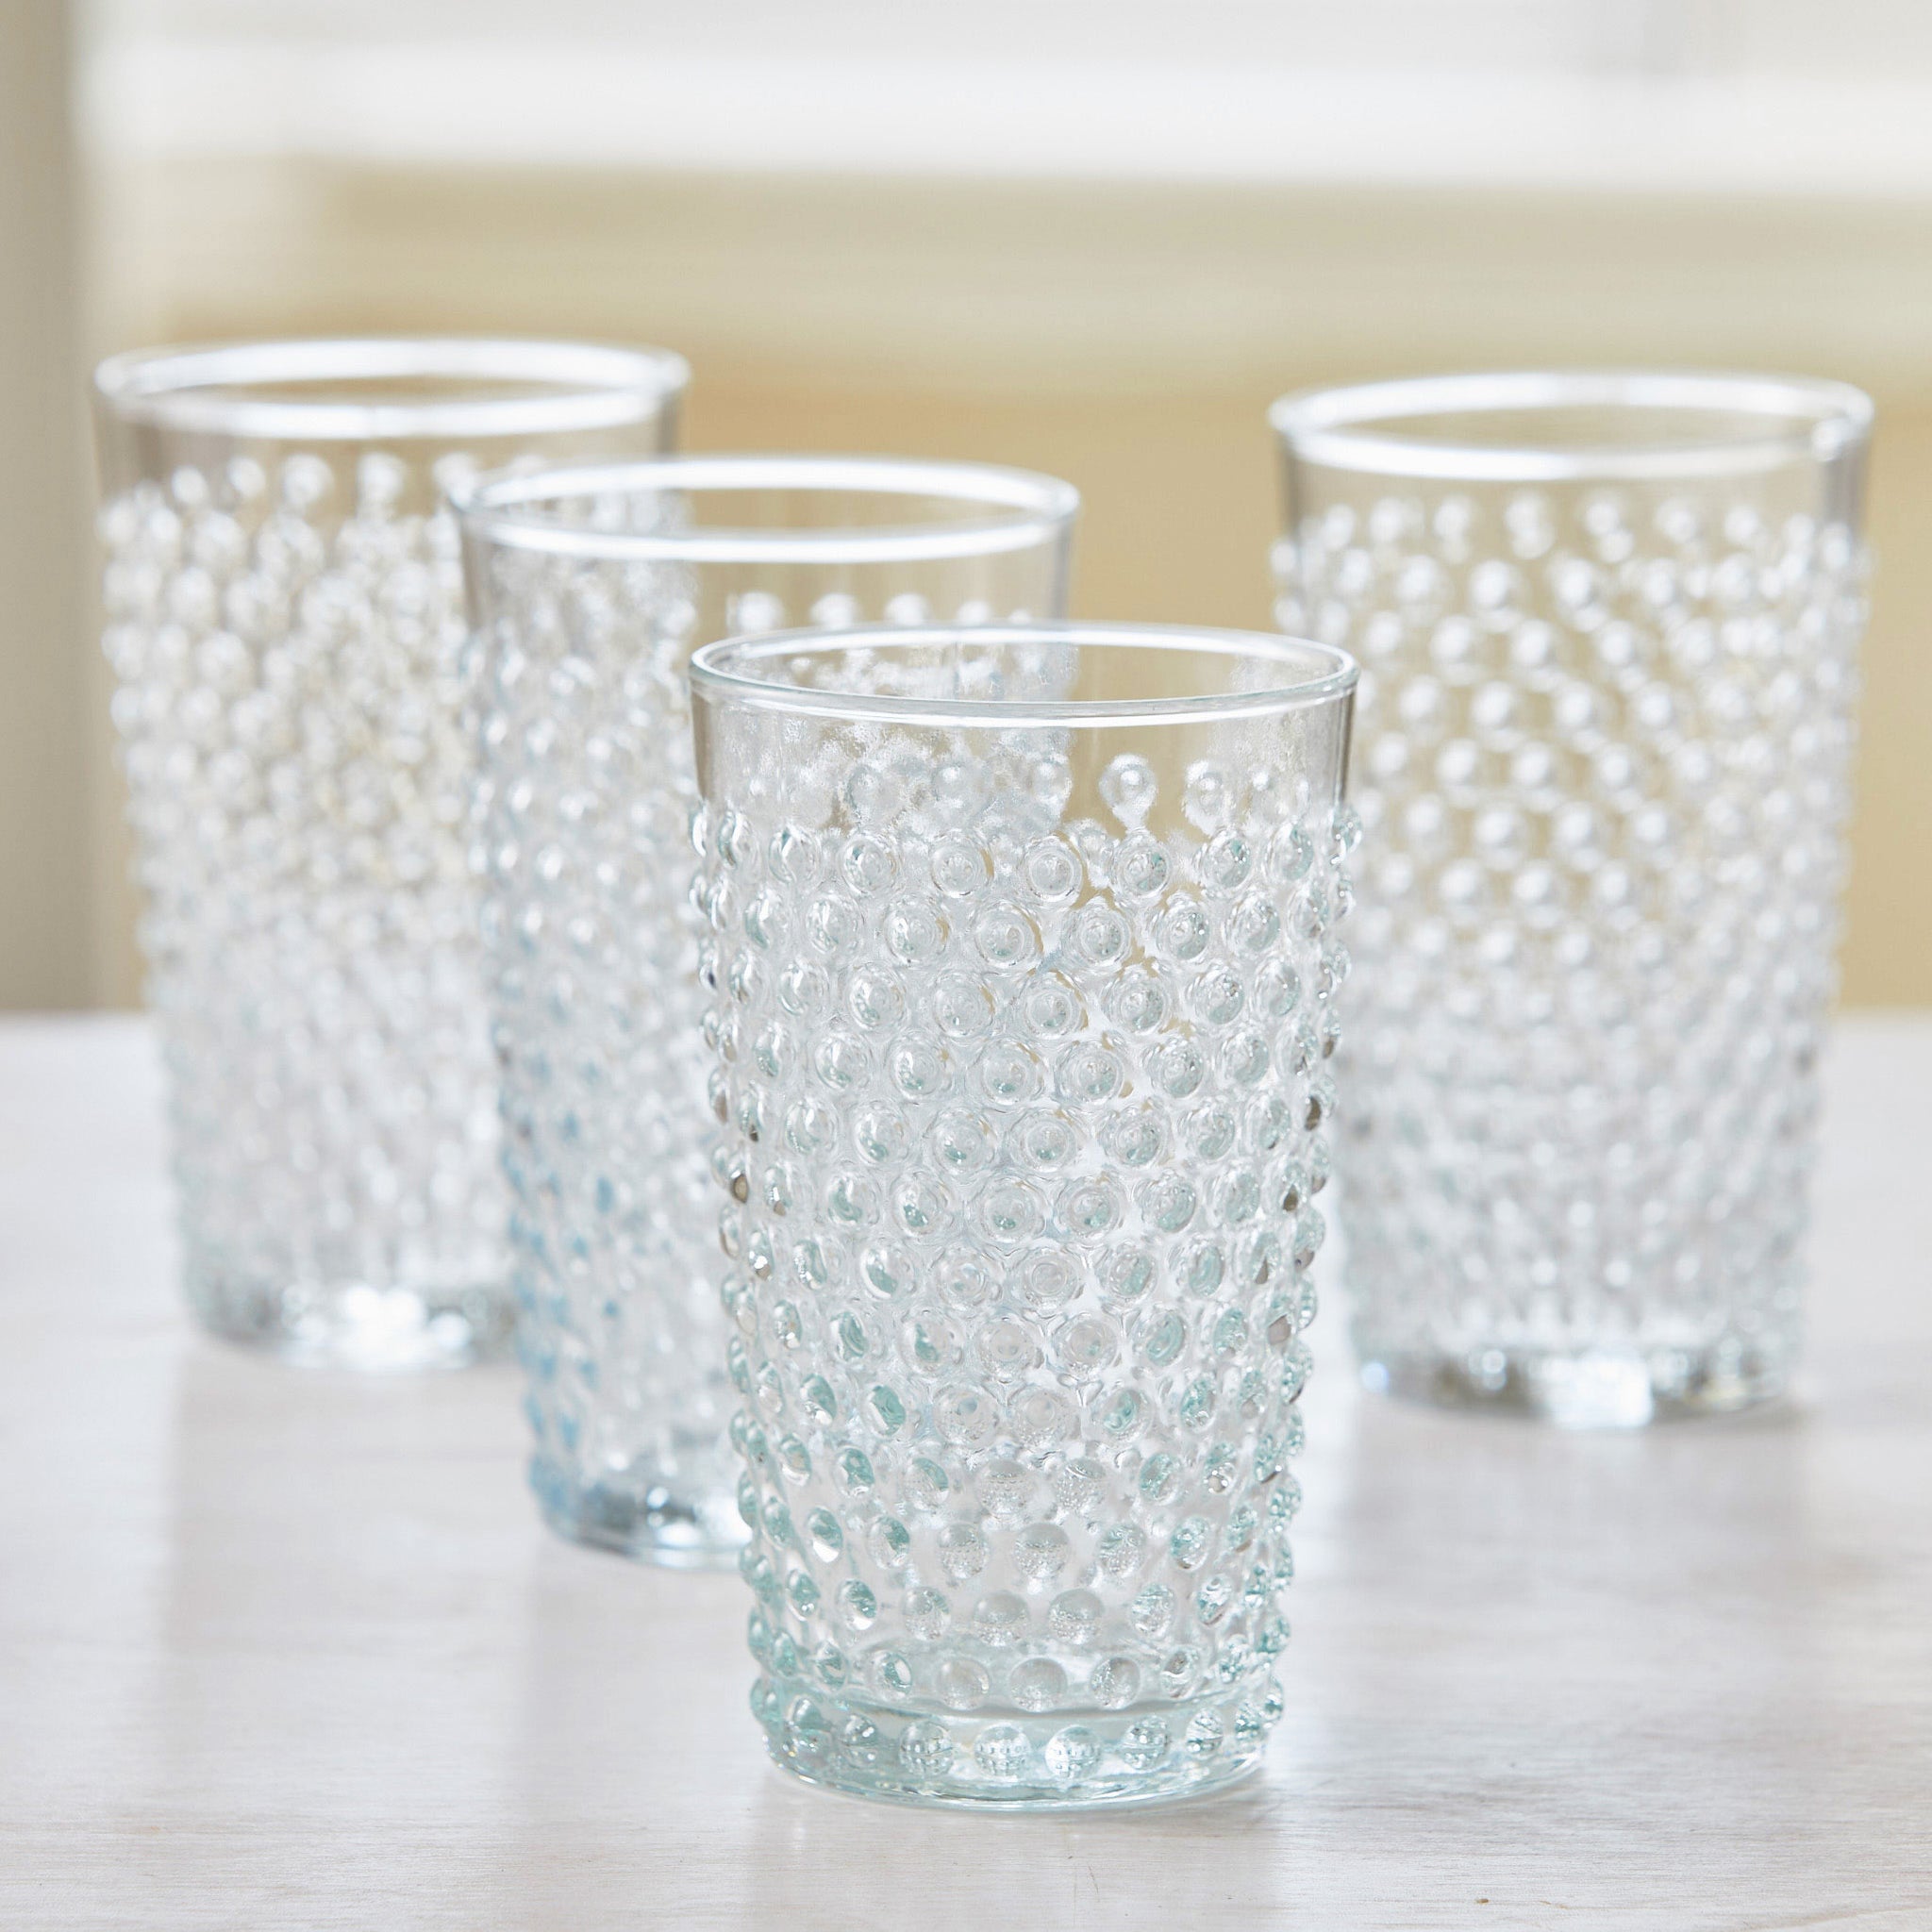 plastic drinking glasses-set of 10-highball glass